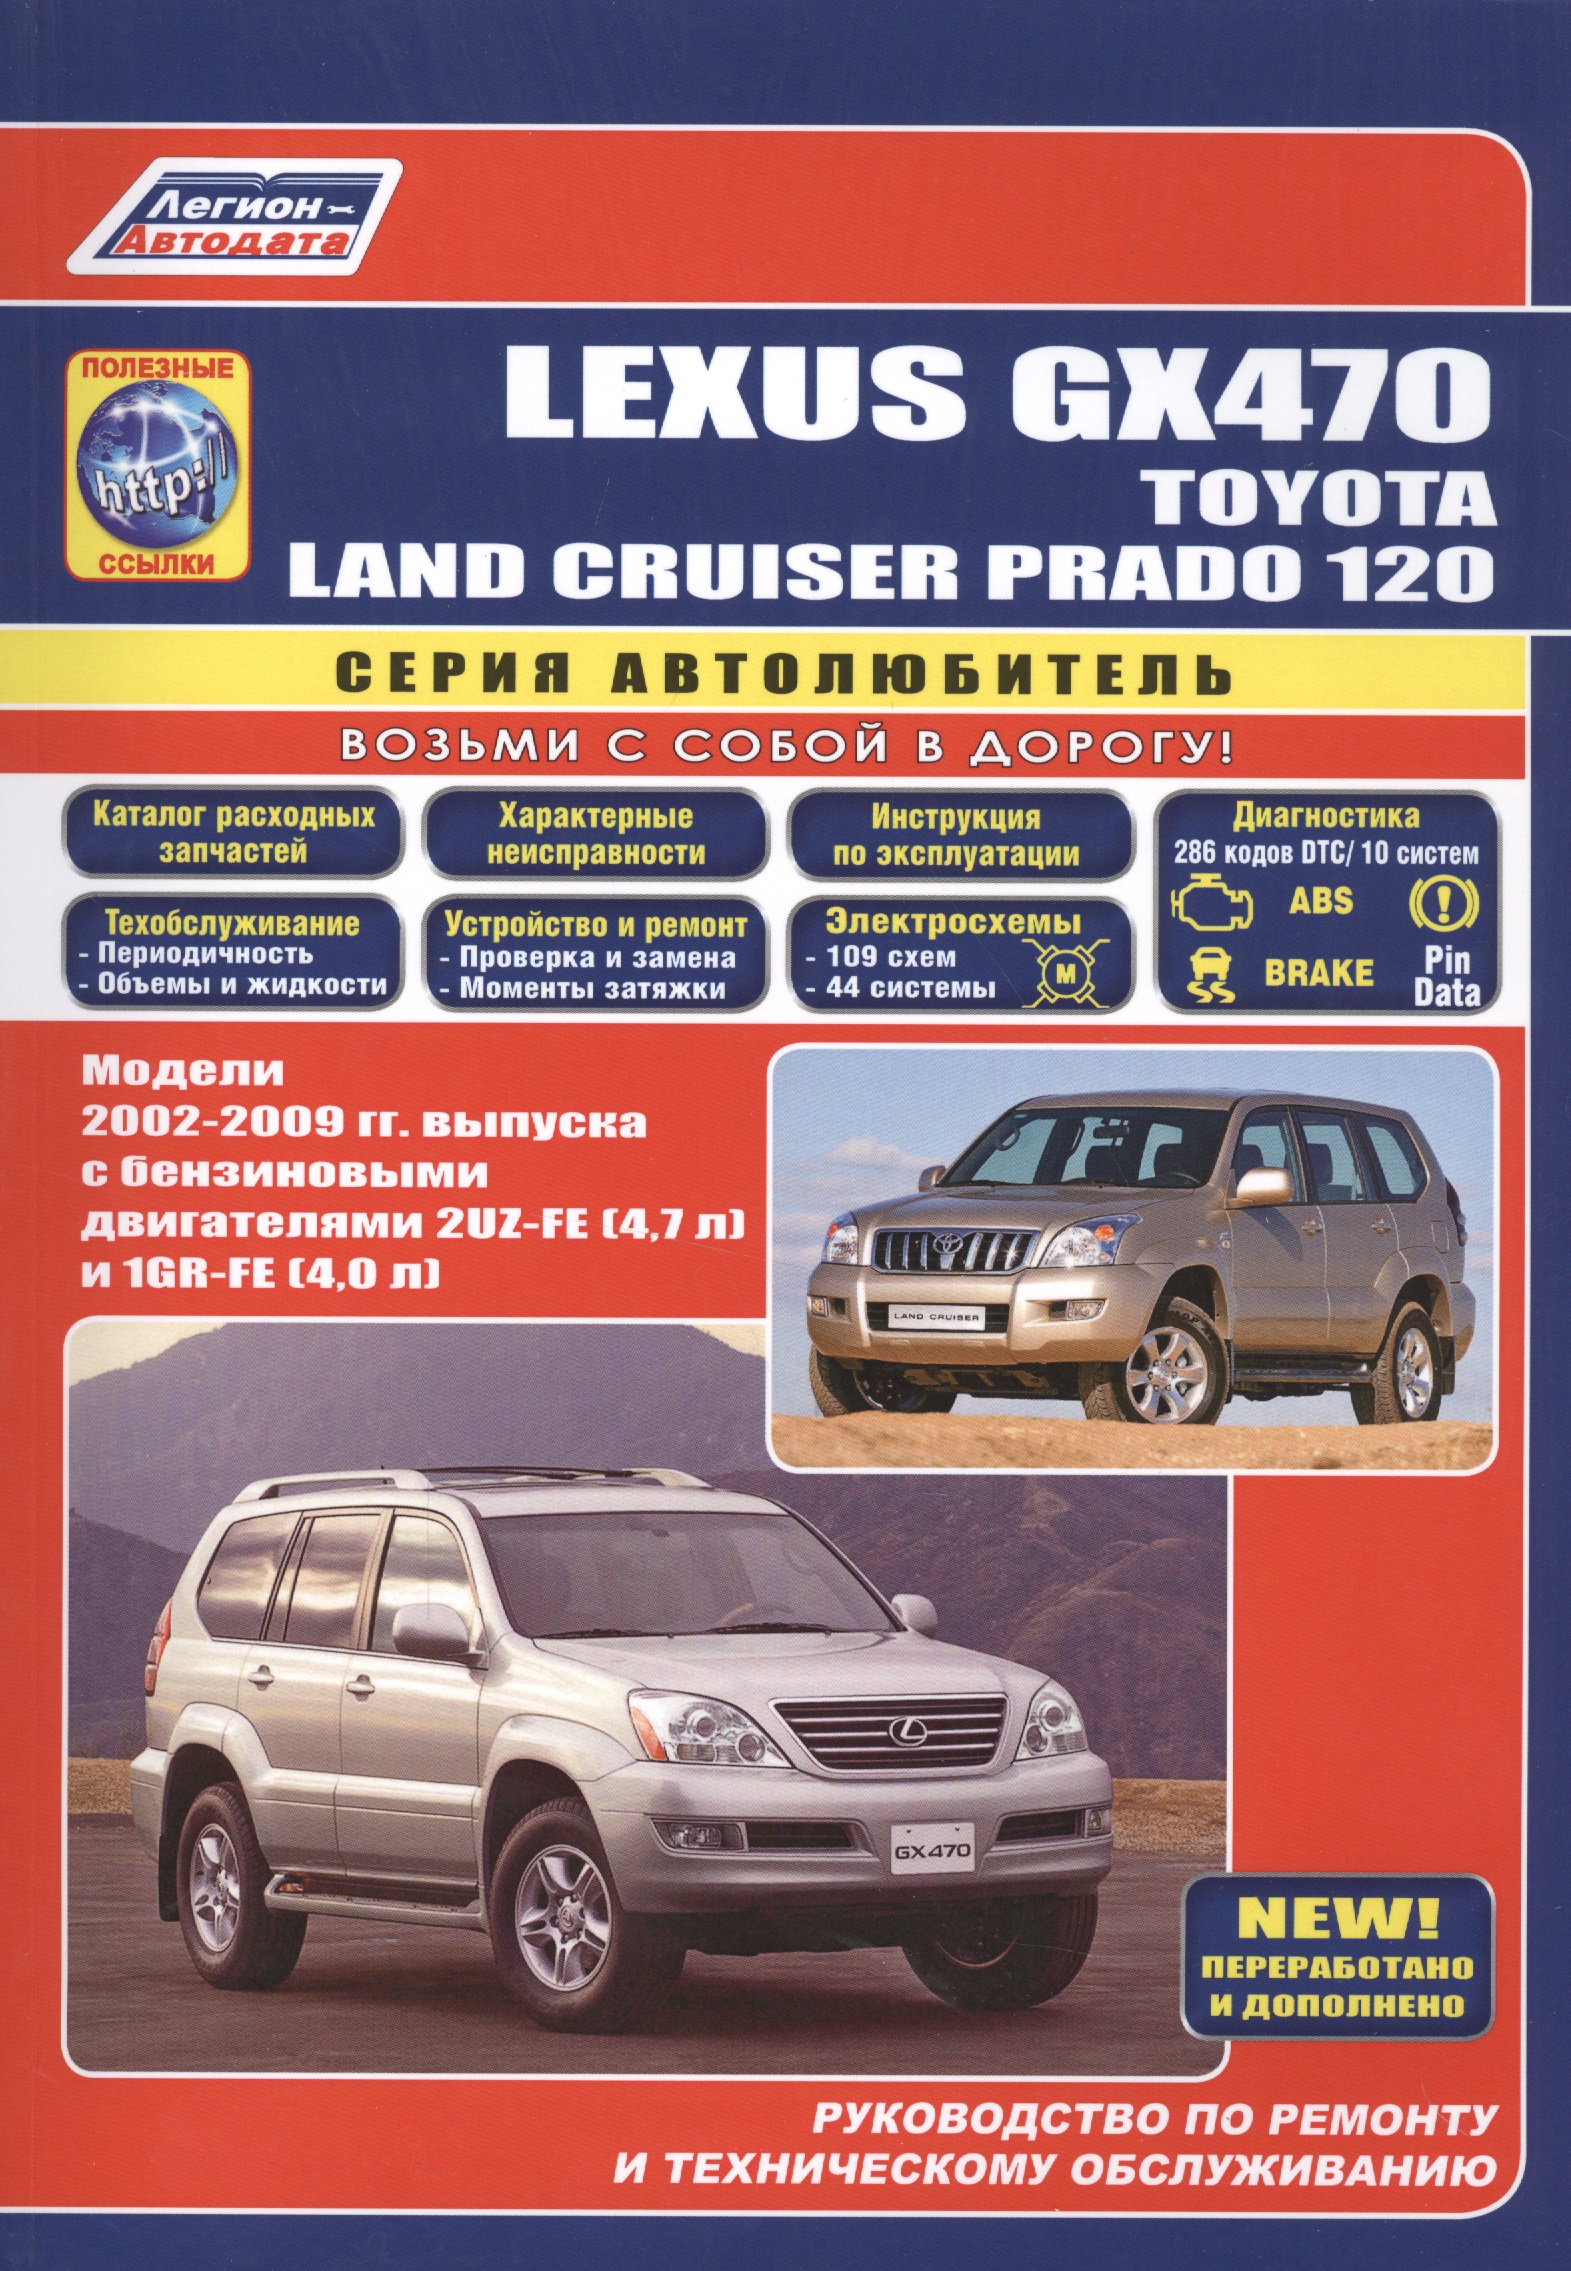 Lexus GX470 Toyota Land Cruiser Prado 120 Модели 2002-2009 гг. вып. (м/тв) (мАвтолюбитель) дефлектор vinguru дефлекторы окон toyota land cruiser prado 120 lexus gx470 2002 2009 afv42002 акрил